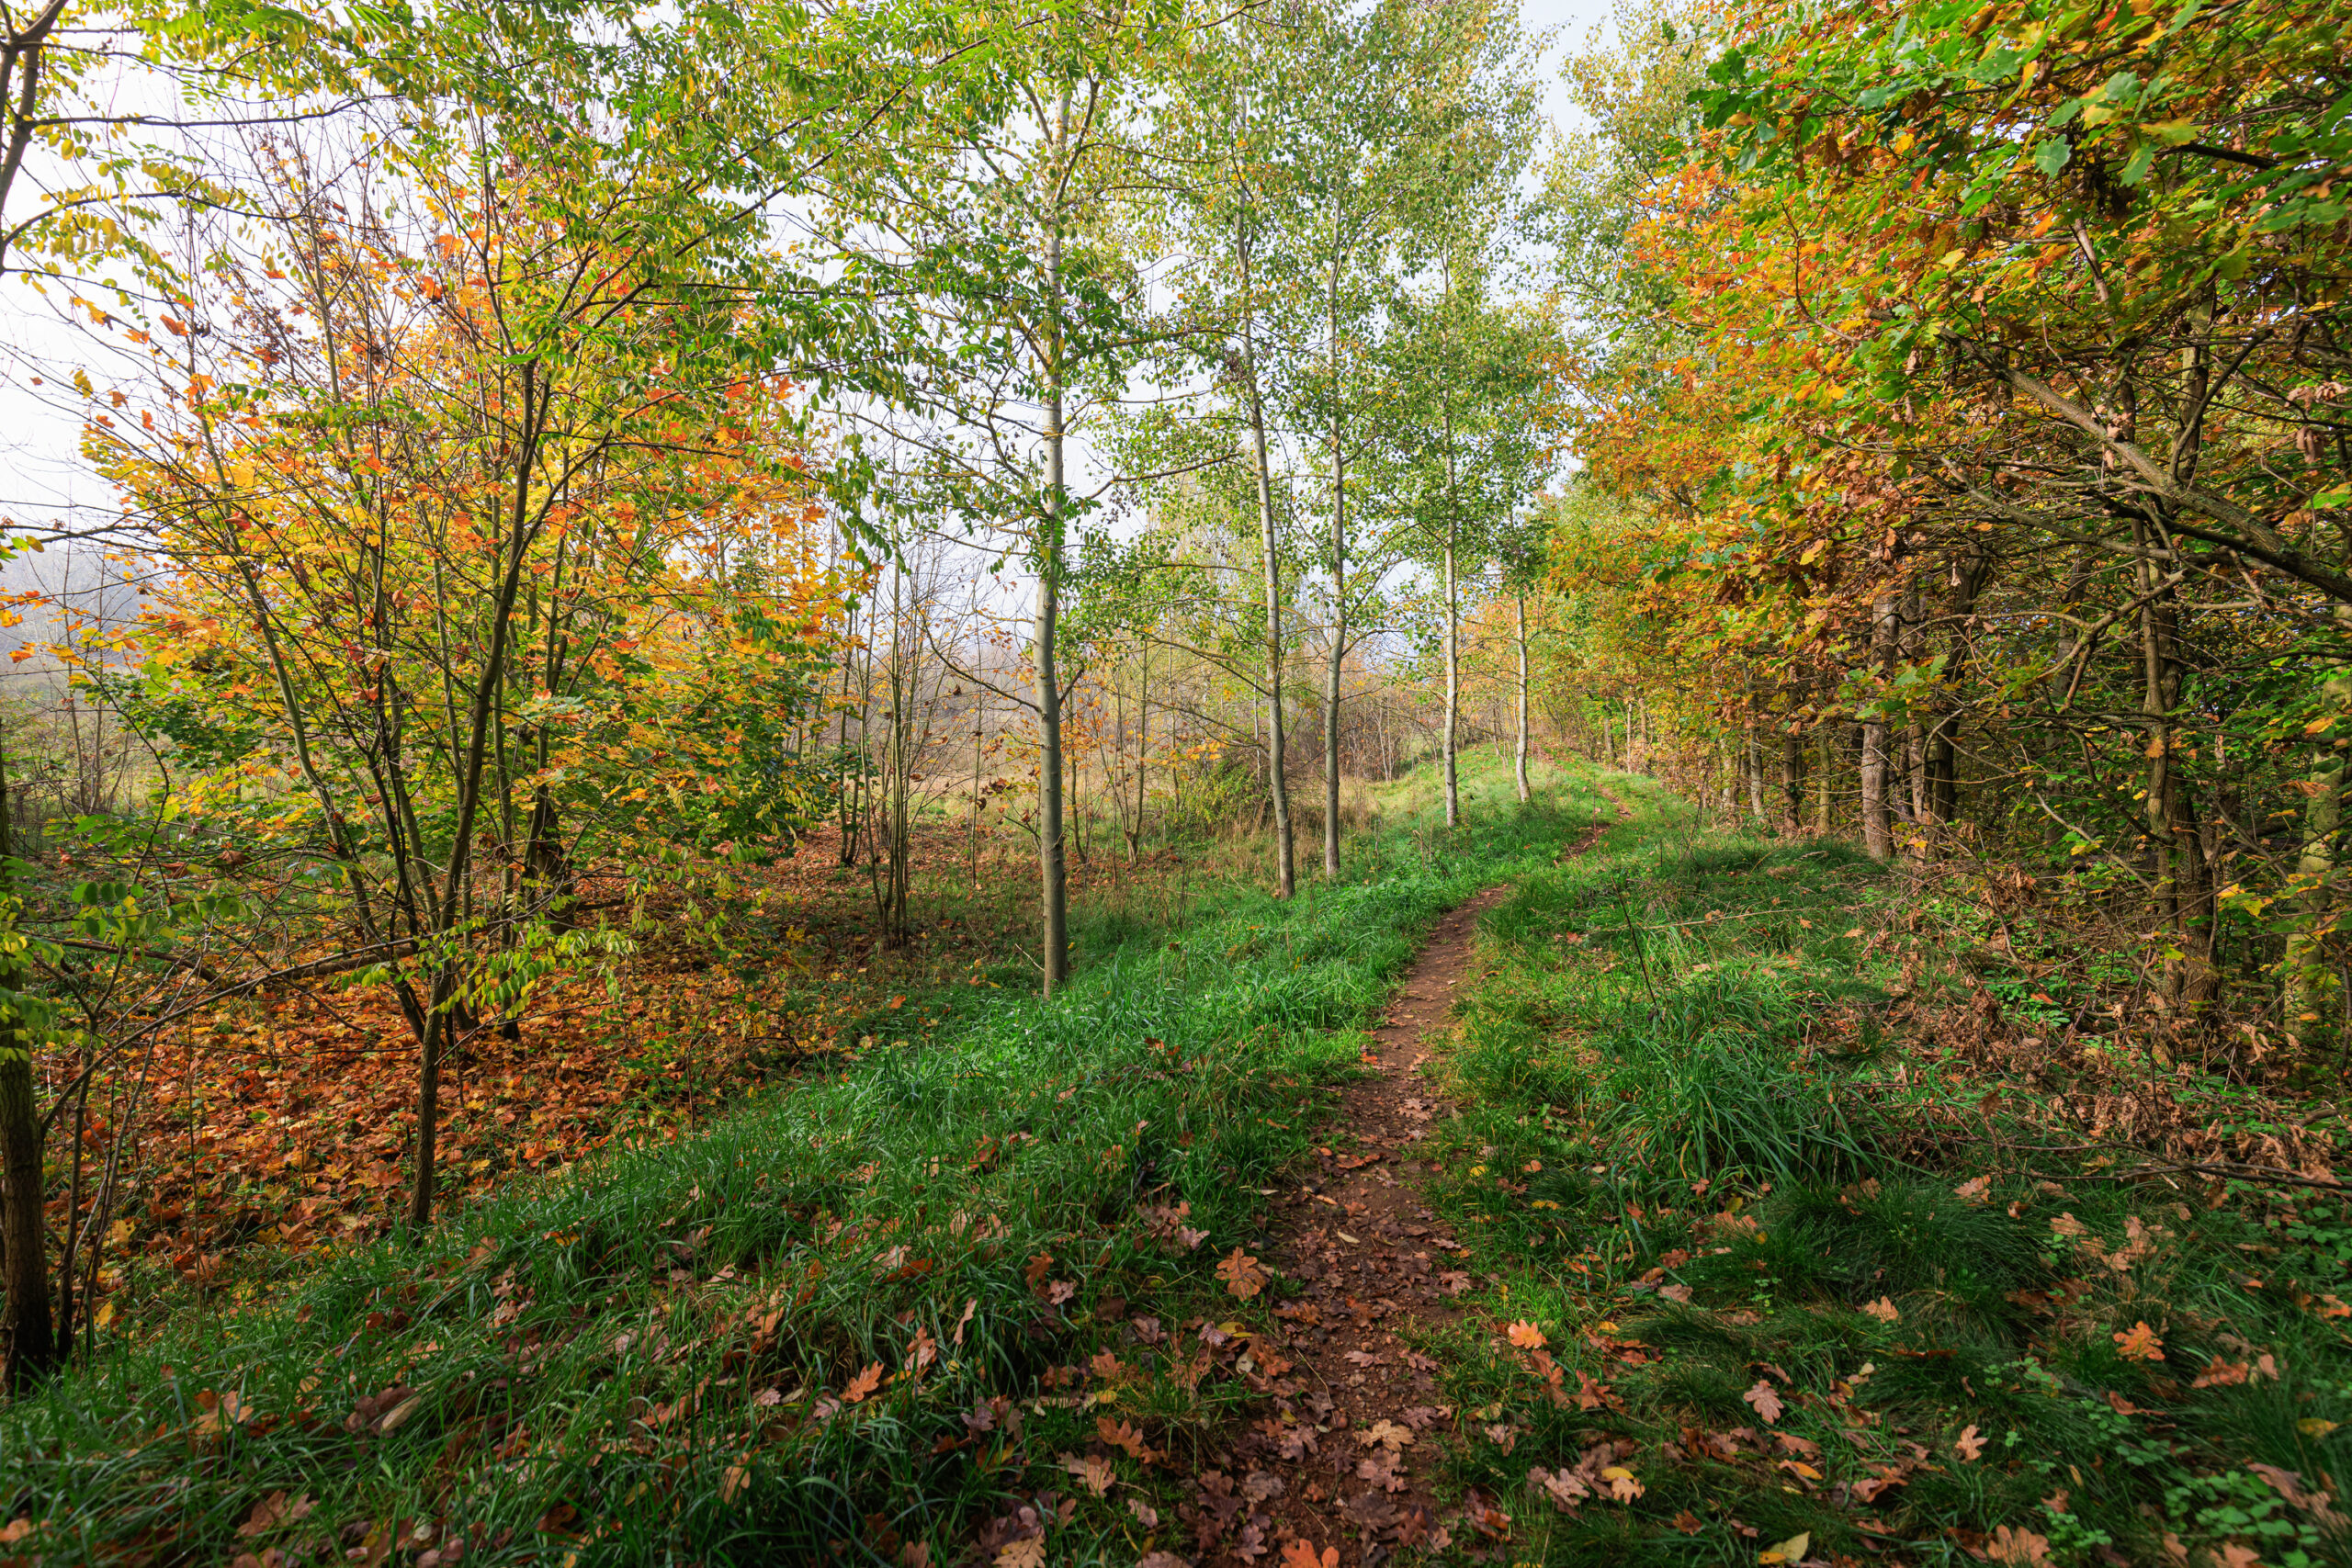 <h1>Hradiště – místo k procházkám</h1><br />
Snímek zachycuje jednu z pěšin, kterými se dá lokalita Hradiště projít. Po pravé straně fotografie jsou vzrostlé listnáče, převážně duby. Vlevo je řidší porost stromů a keřů.